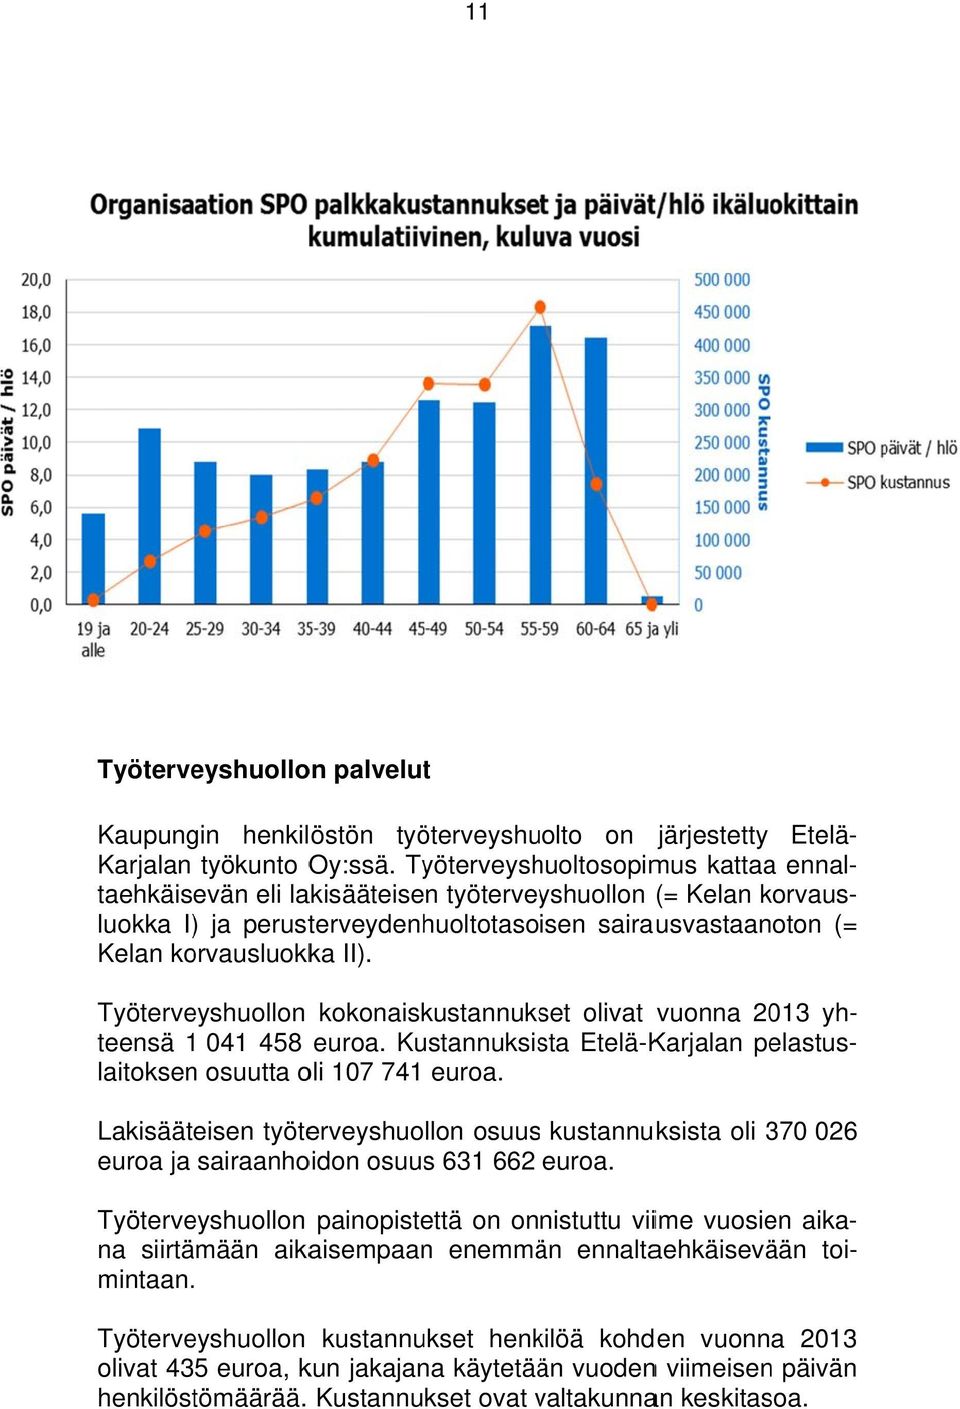 Työterveyshuollon kokonaiskustannukset olivat vuonna 2013 yh- teensä 1 041 458 euroa. Kustannuksista Etelä-Karjalan pelastus- laitoksen osuutta oli 107 741 euroa.